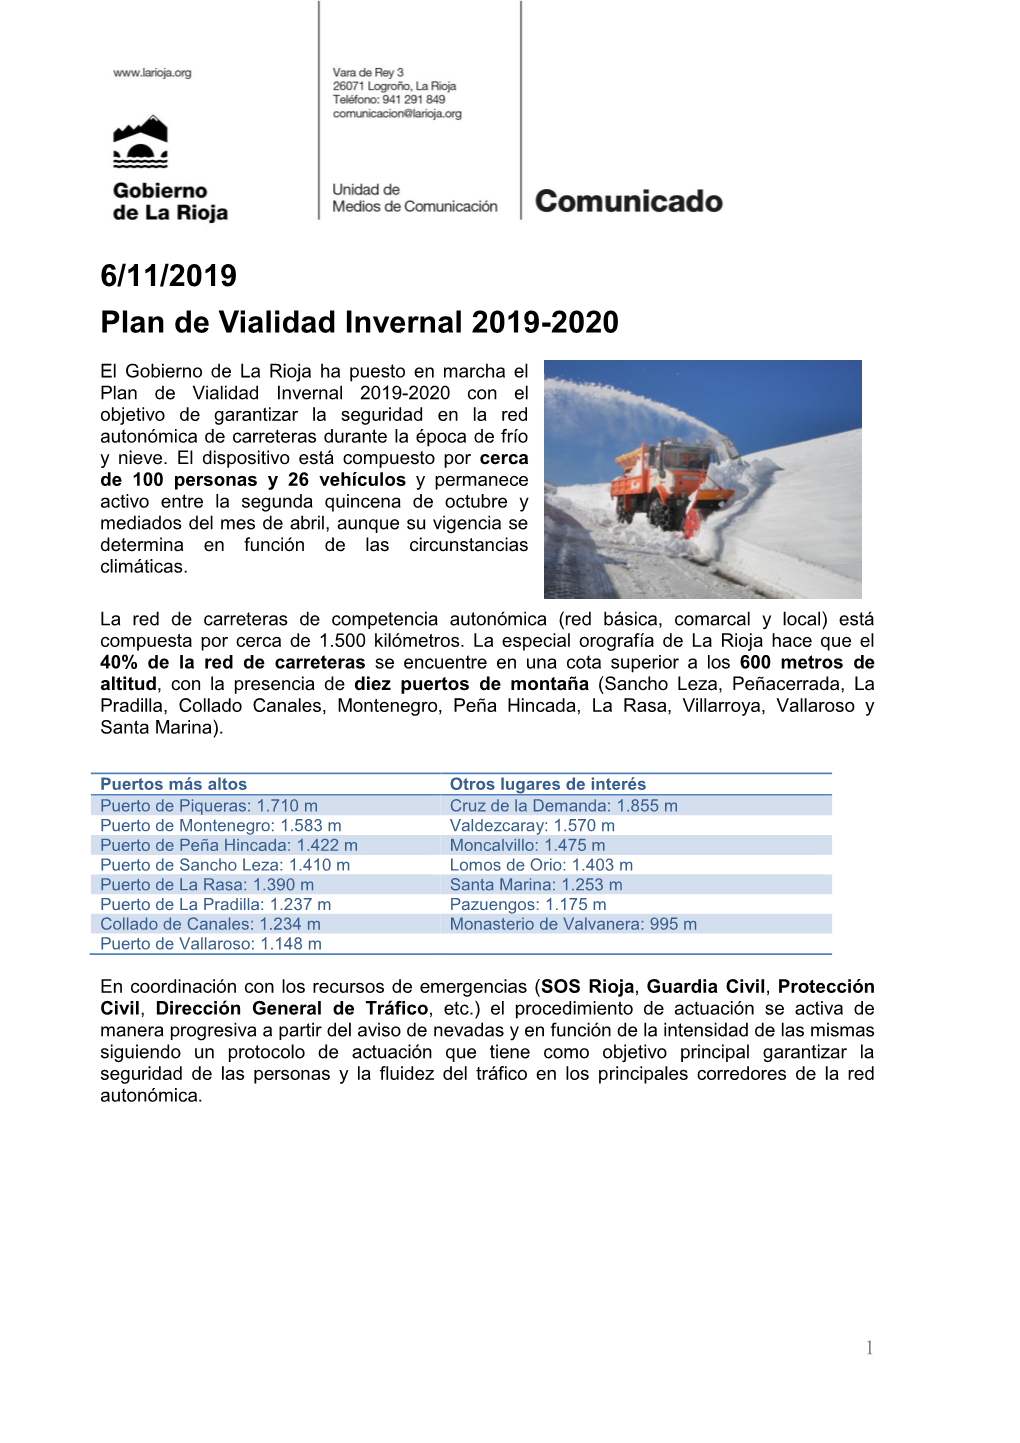 6/11/2019 Plan De Vialidad Invernal 2019-2020